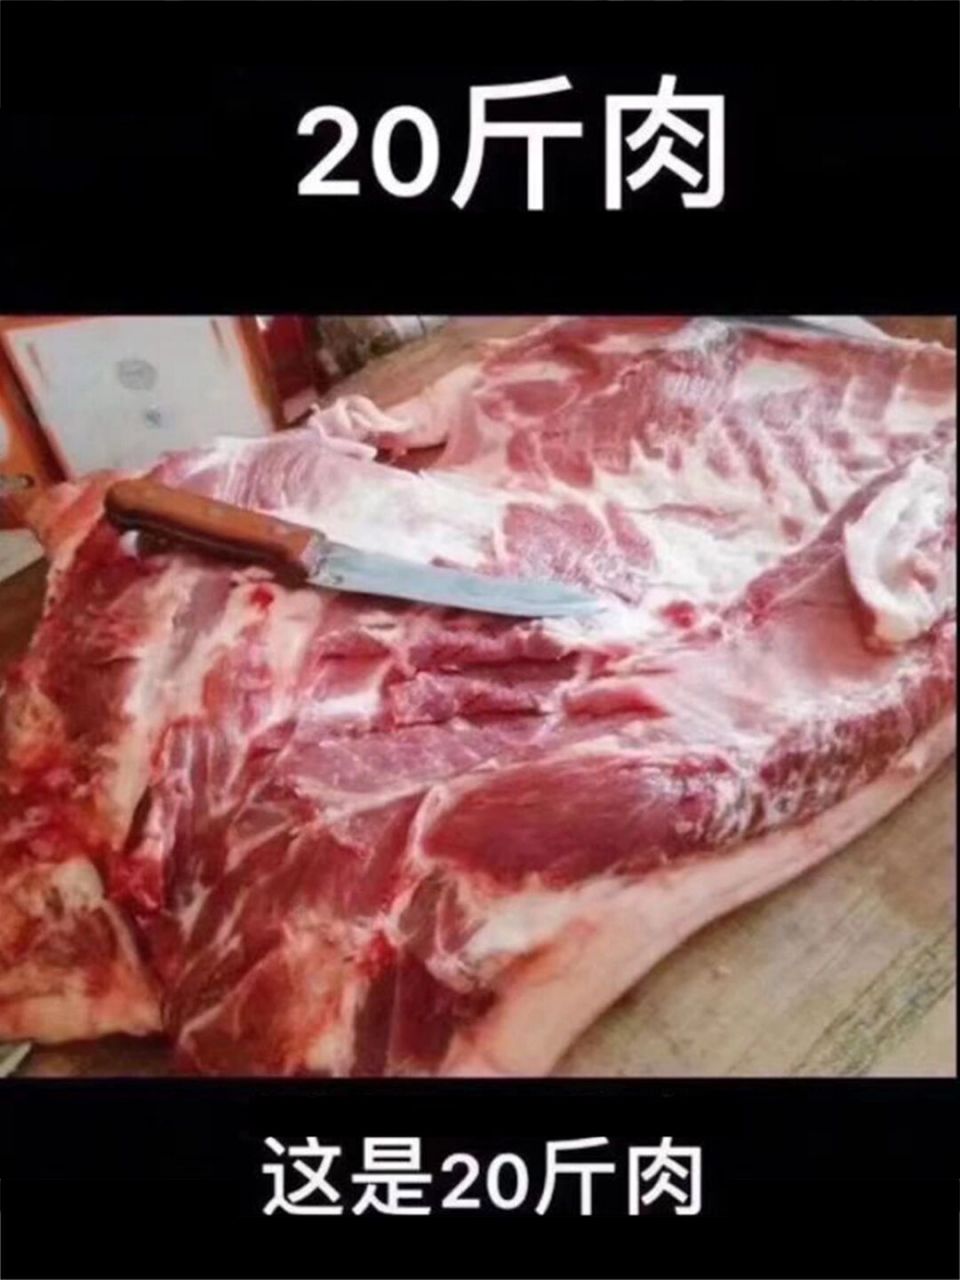 20斤肉有多少图片对比图片